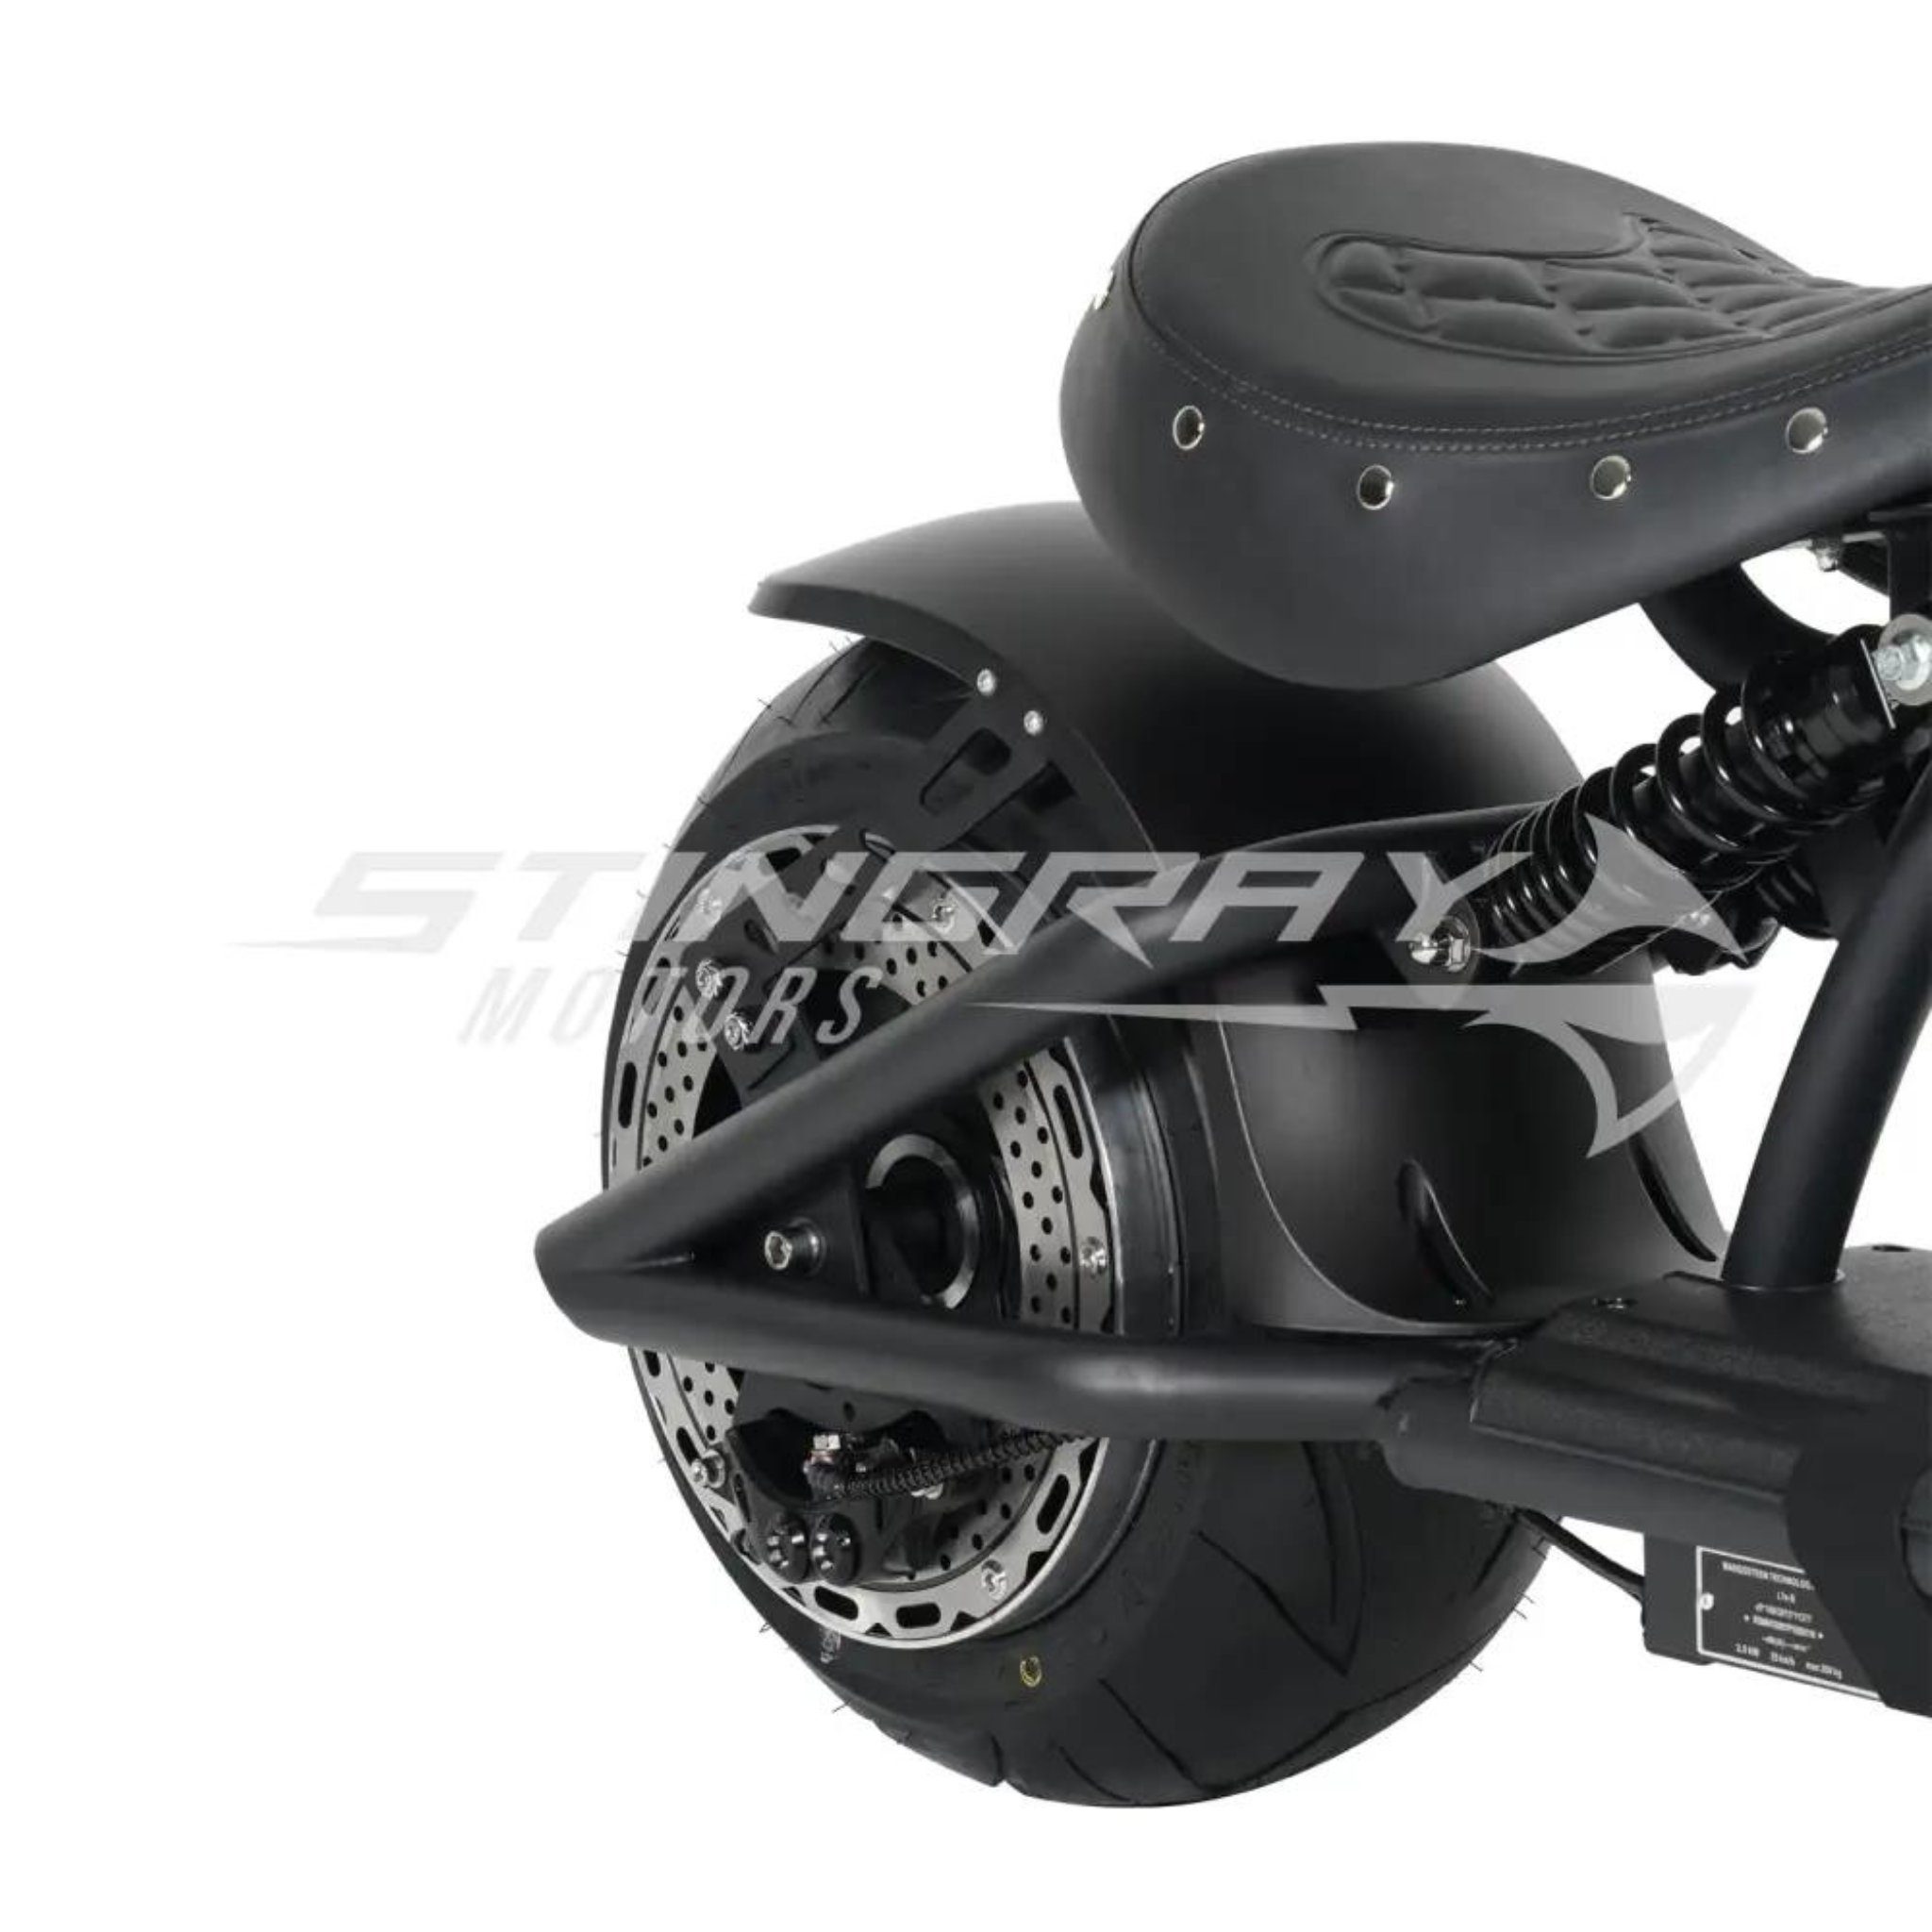 Stingray Motors E-Motorroller Elektroroller 45 E 3kw Custom km/h Stingray M1P, W, - - - 3000,00 Chopper Harley 30Ah Blau